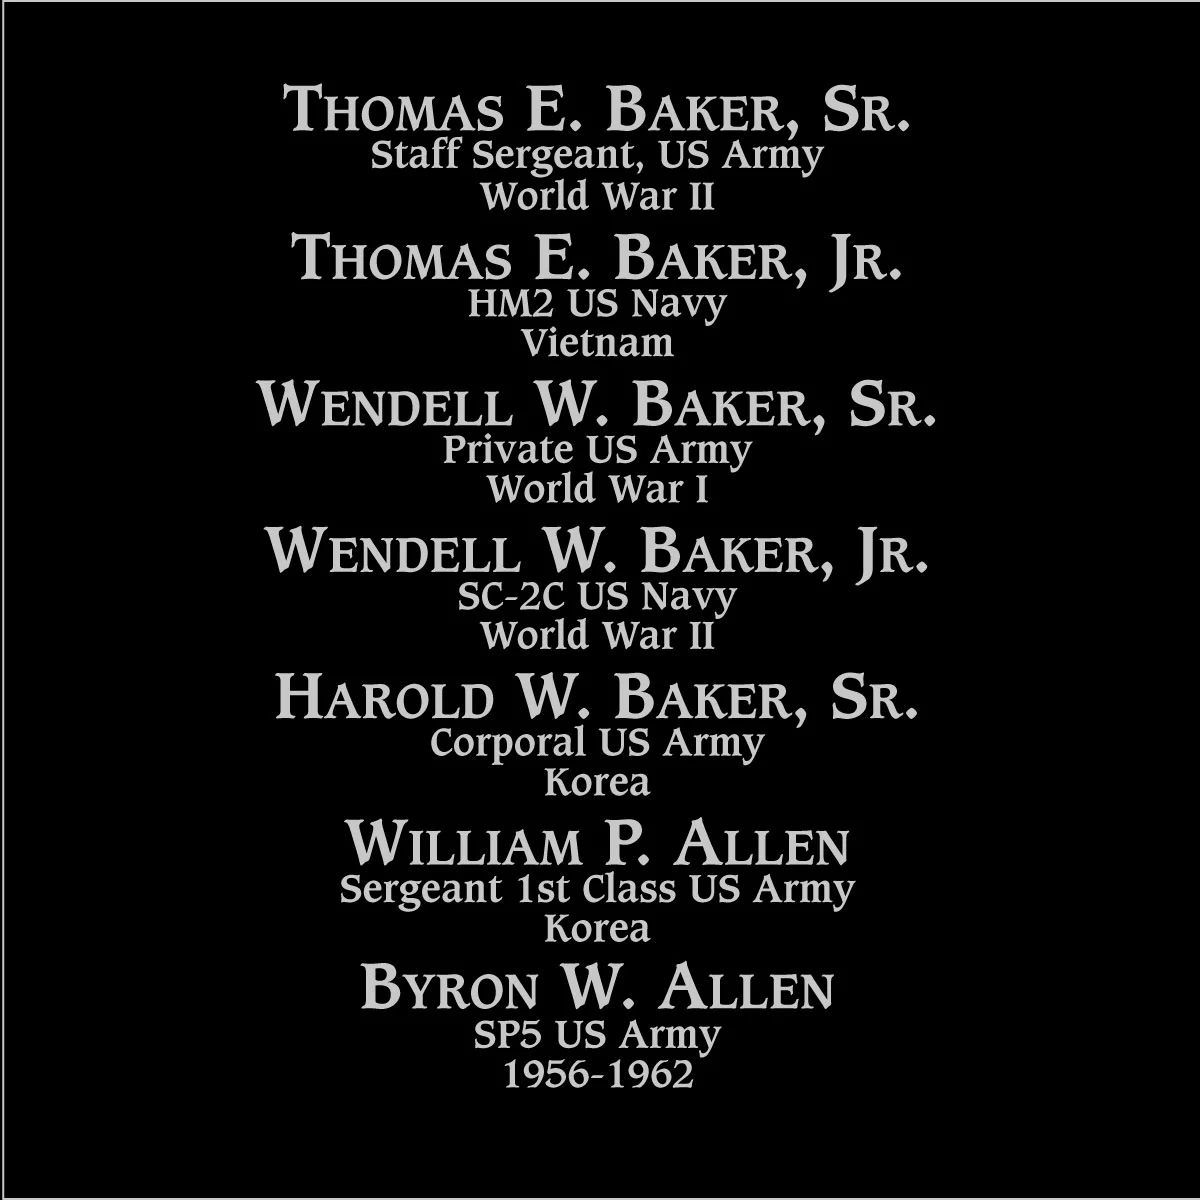 Wendell W. Baker, jr